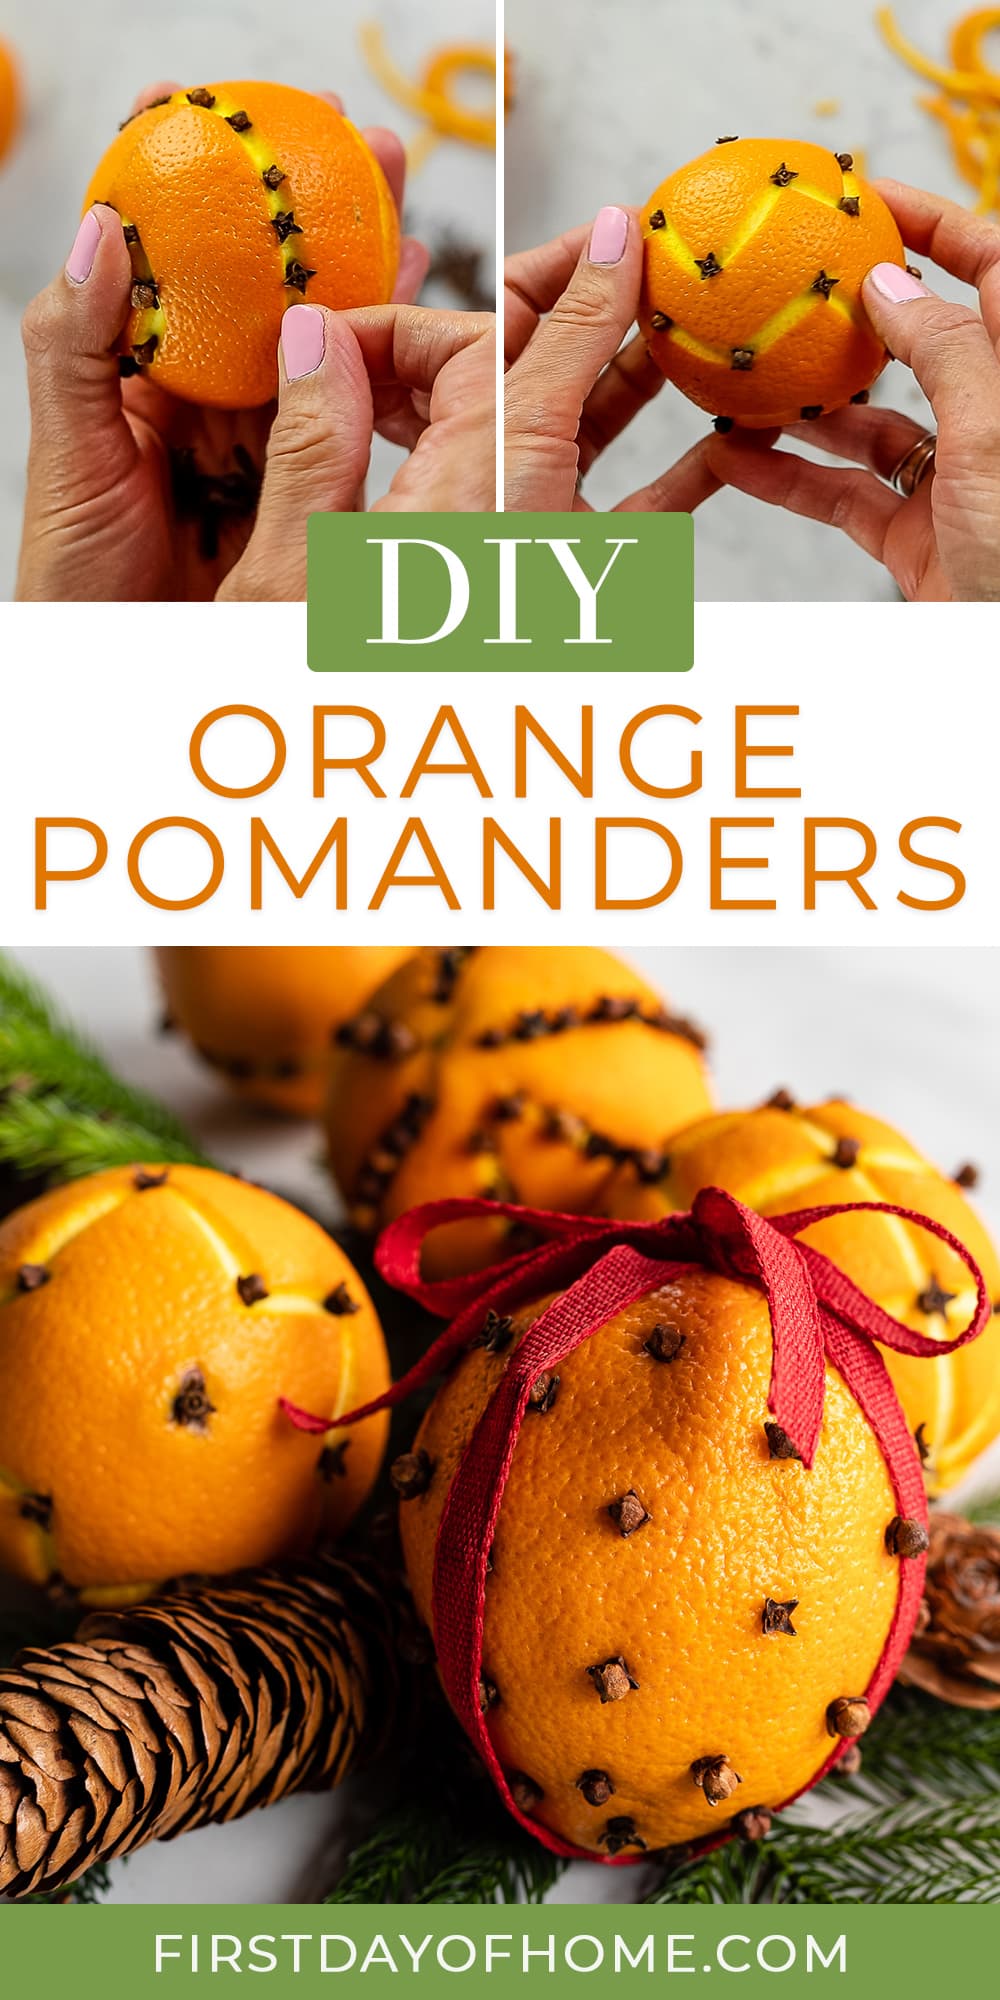 Steps showing how to make orange pomander balls with cloves